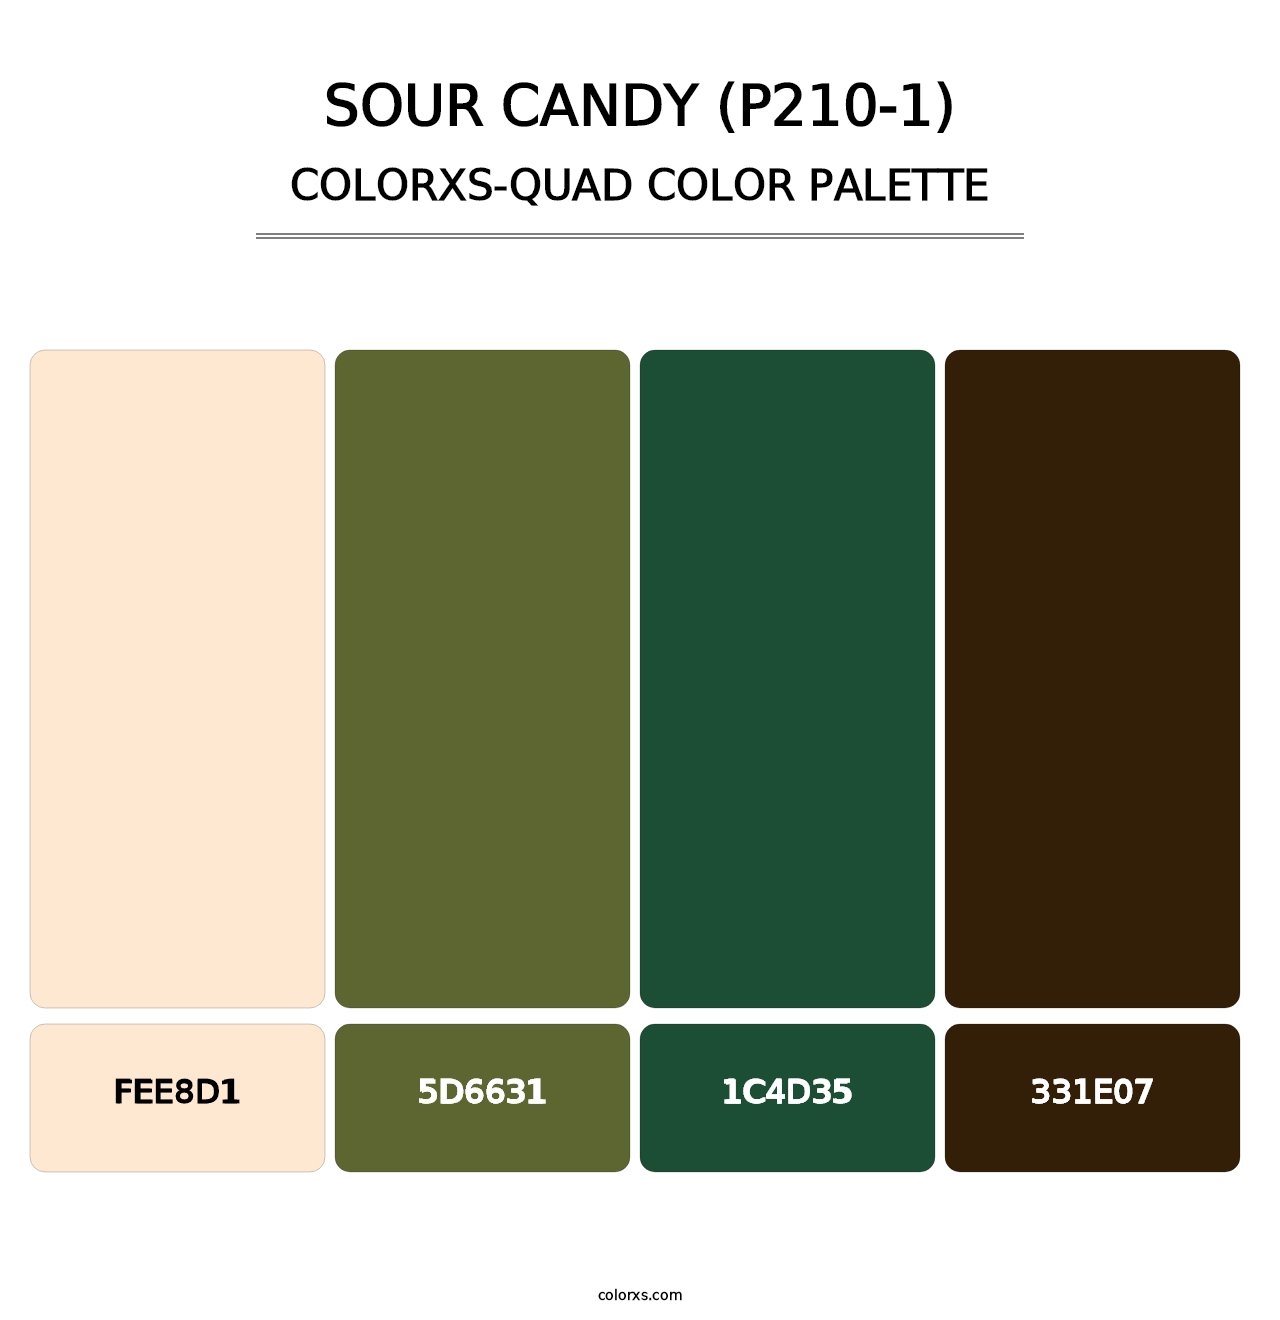 Sour Candy (P210-1) - Colorxs Quad Palette